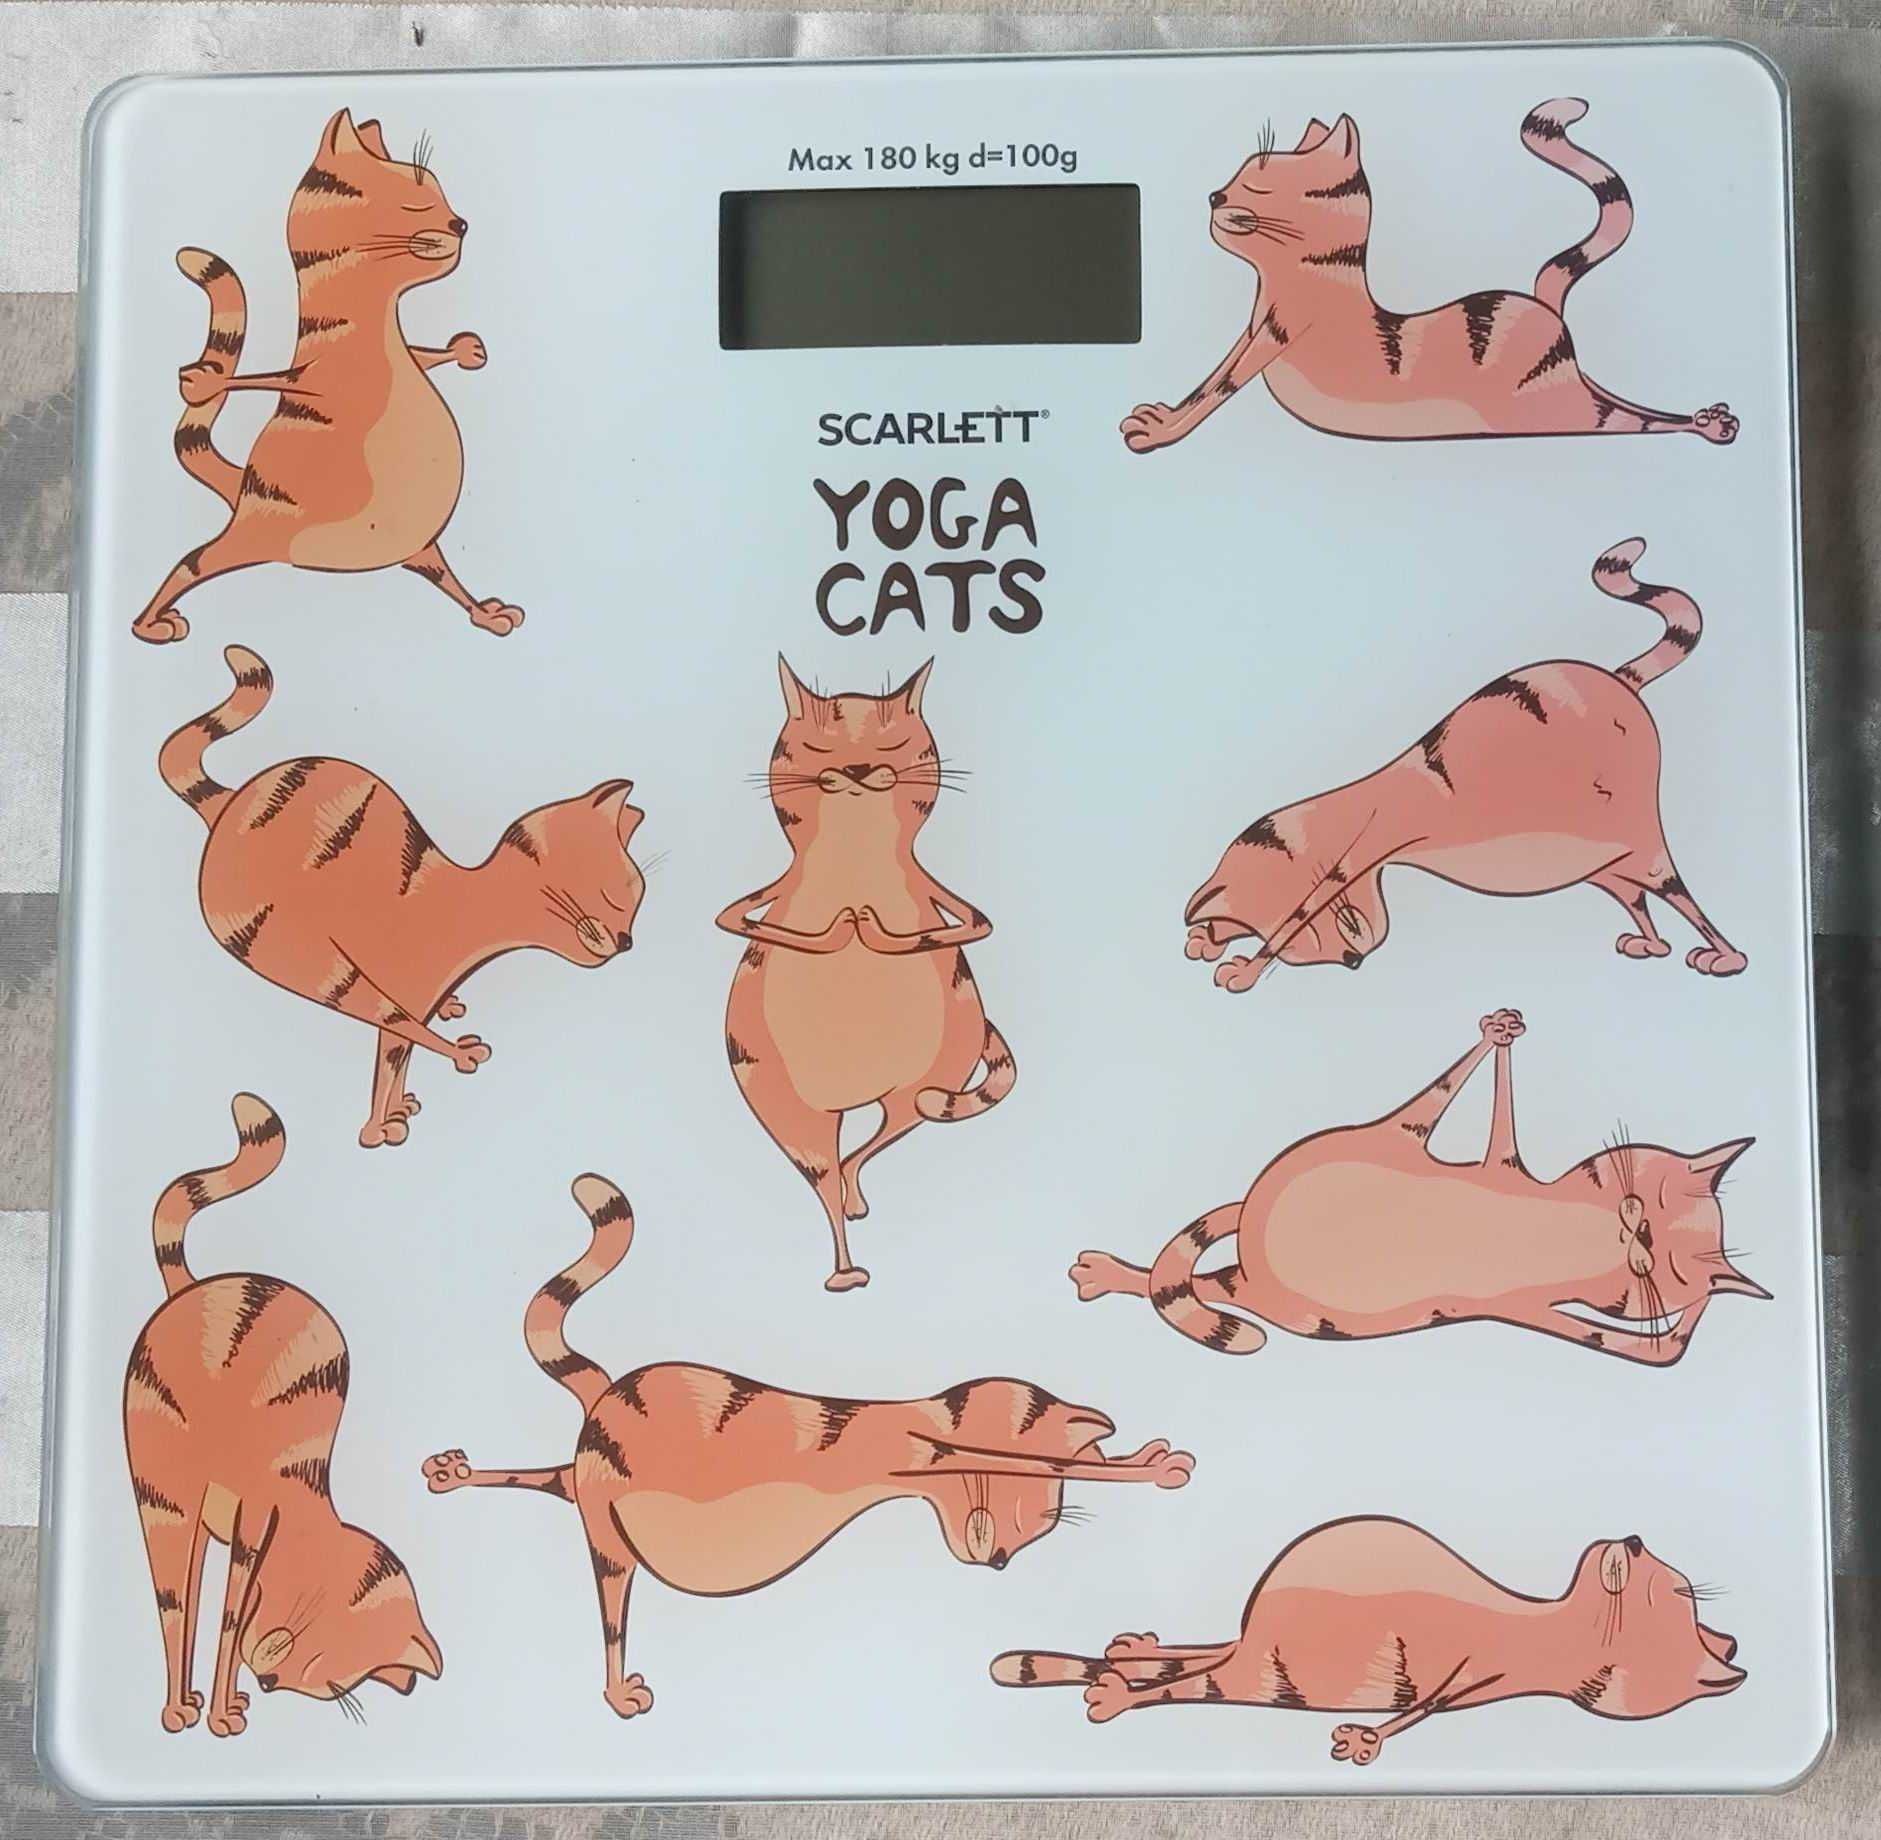 Waga łazienkowa Scarlett Yoga Cats